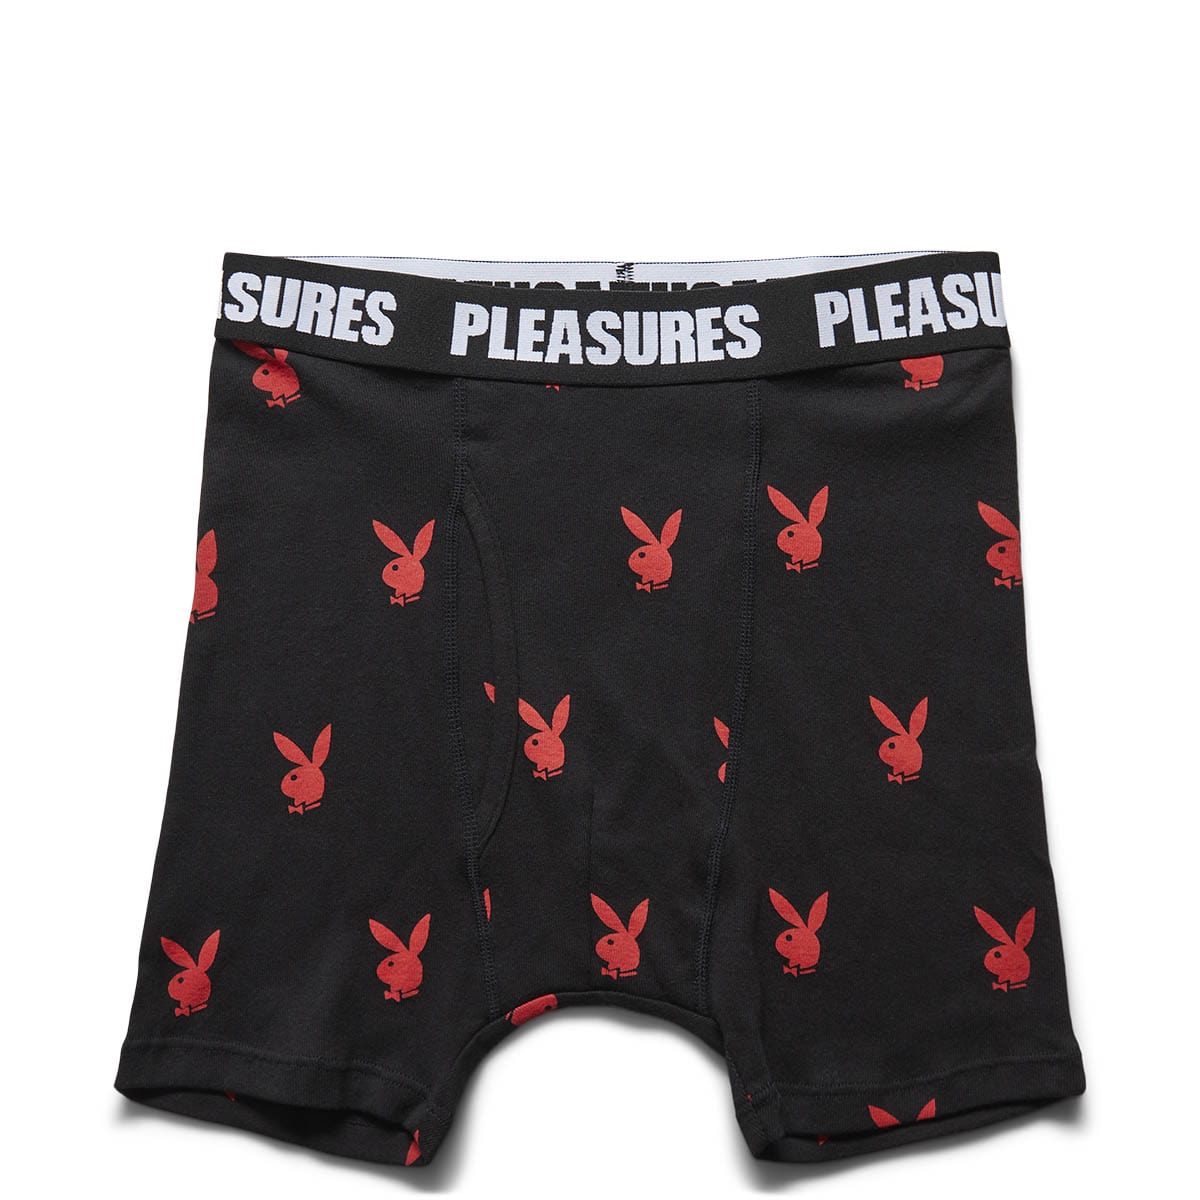 Pleasures Shorts X PLAYBOY BOXER BRIEFS (2 PACK)